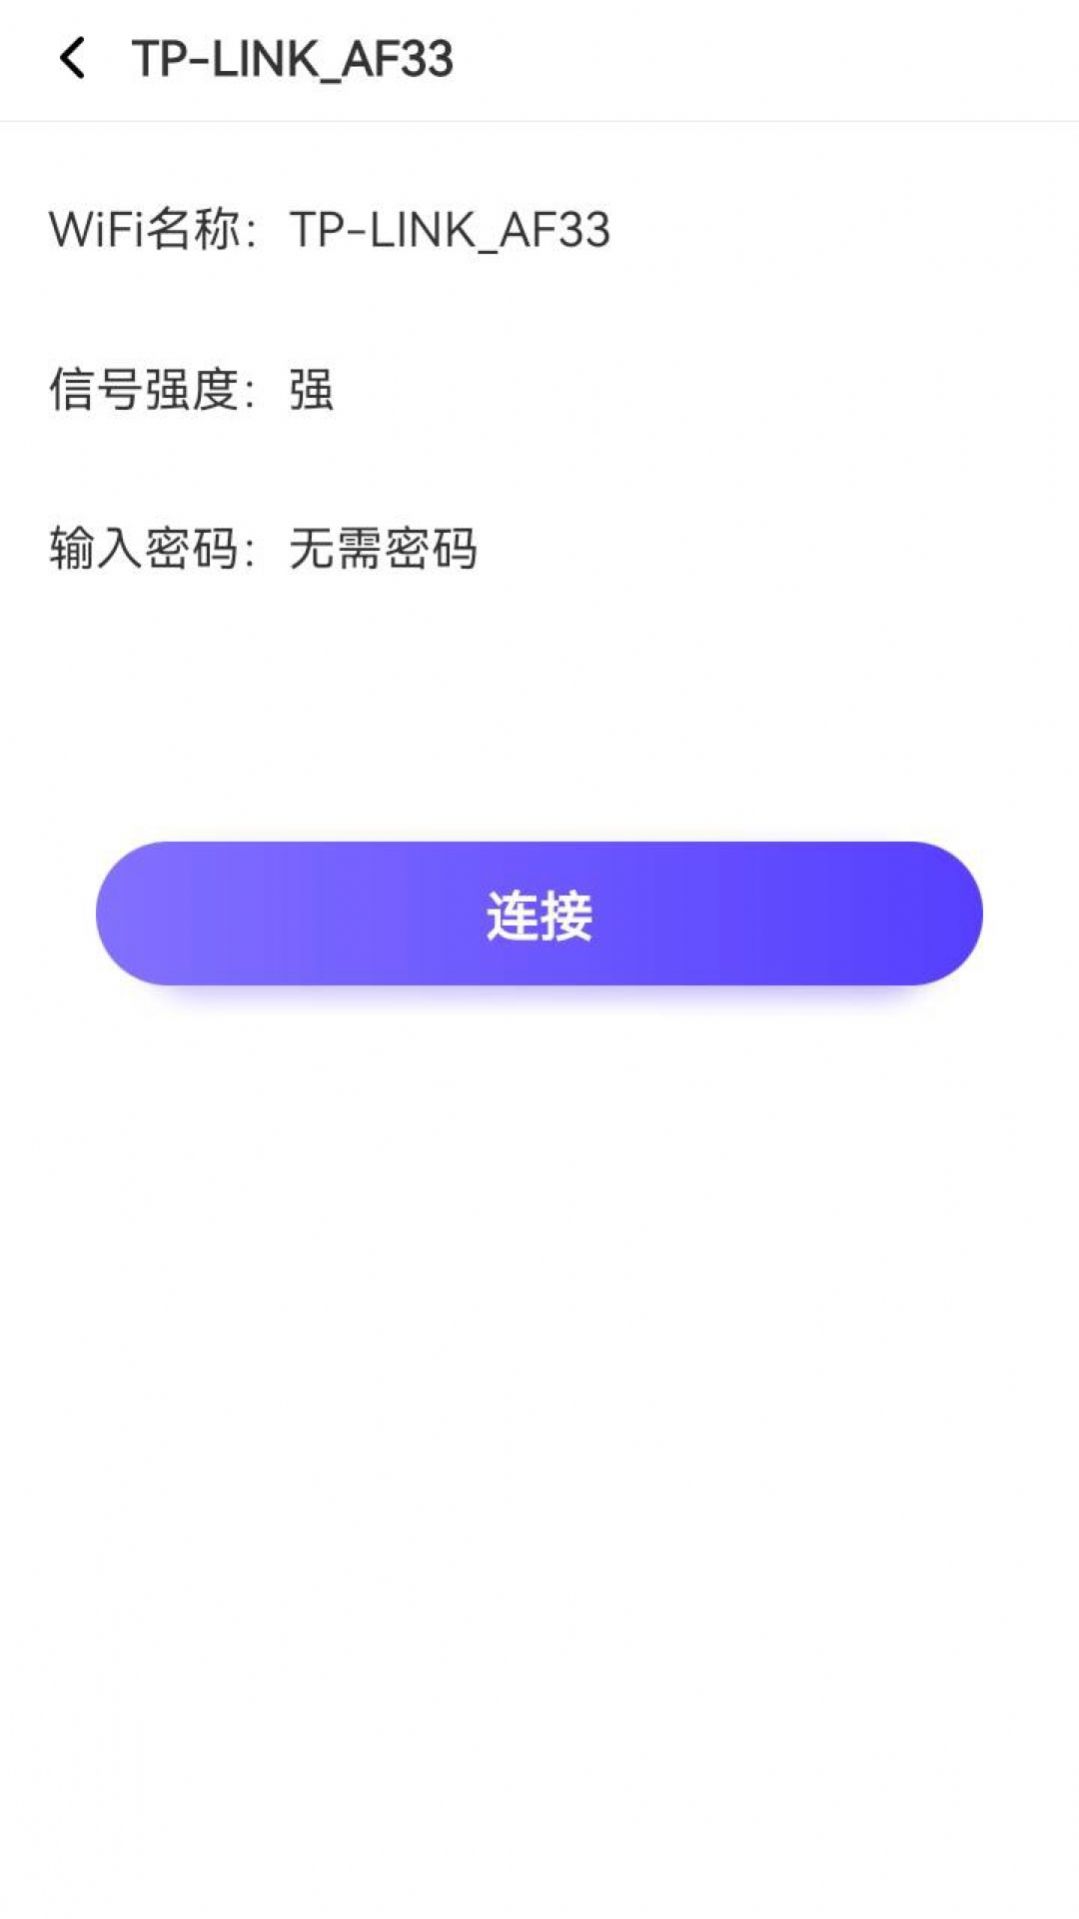 鹰眼WiFi安卓版app图片1